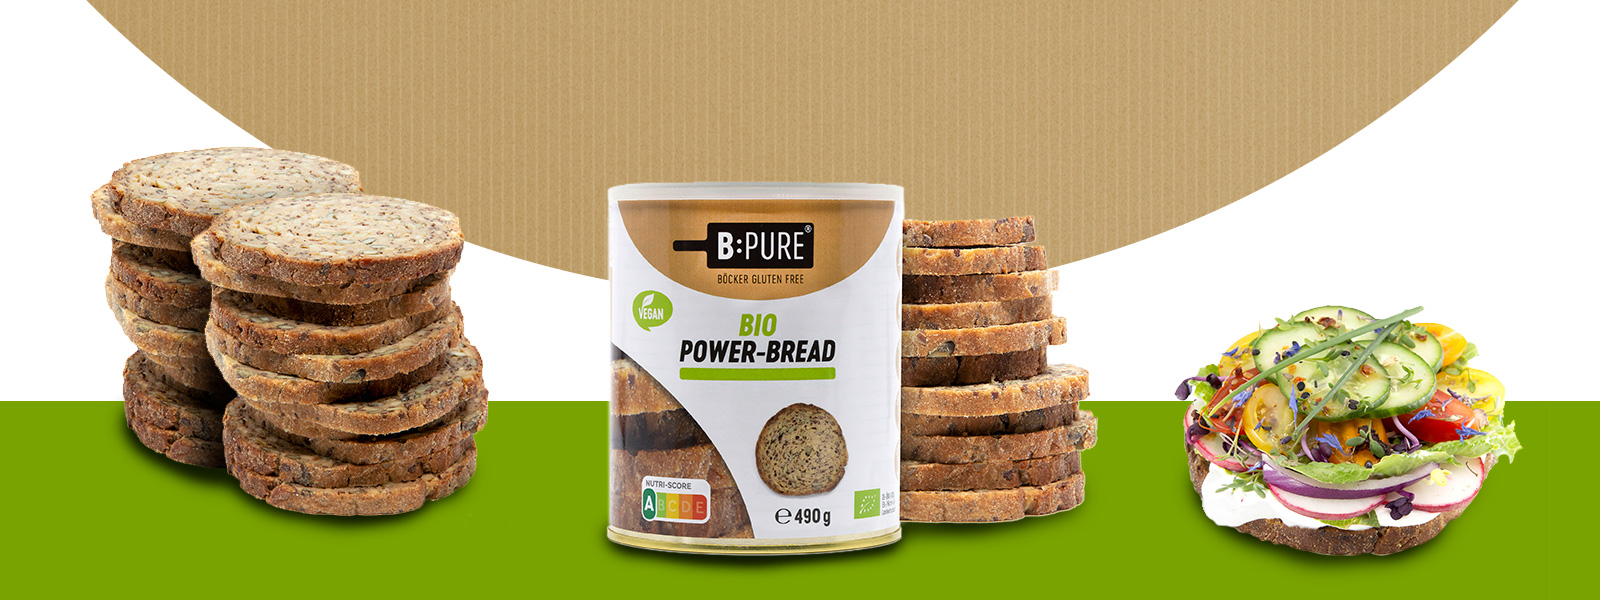 B:PURE Bio Power-Bread